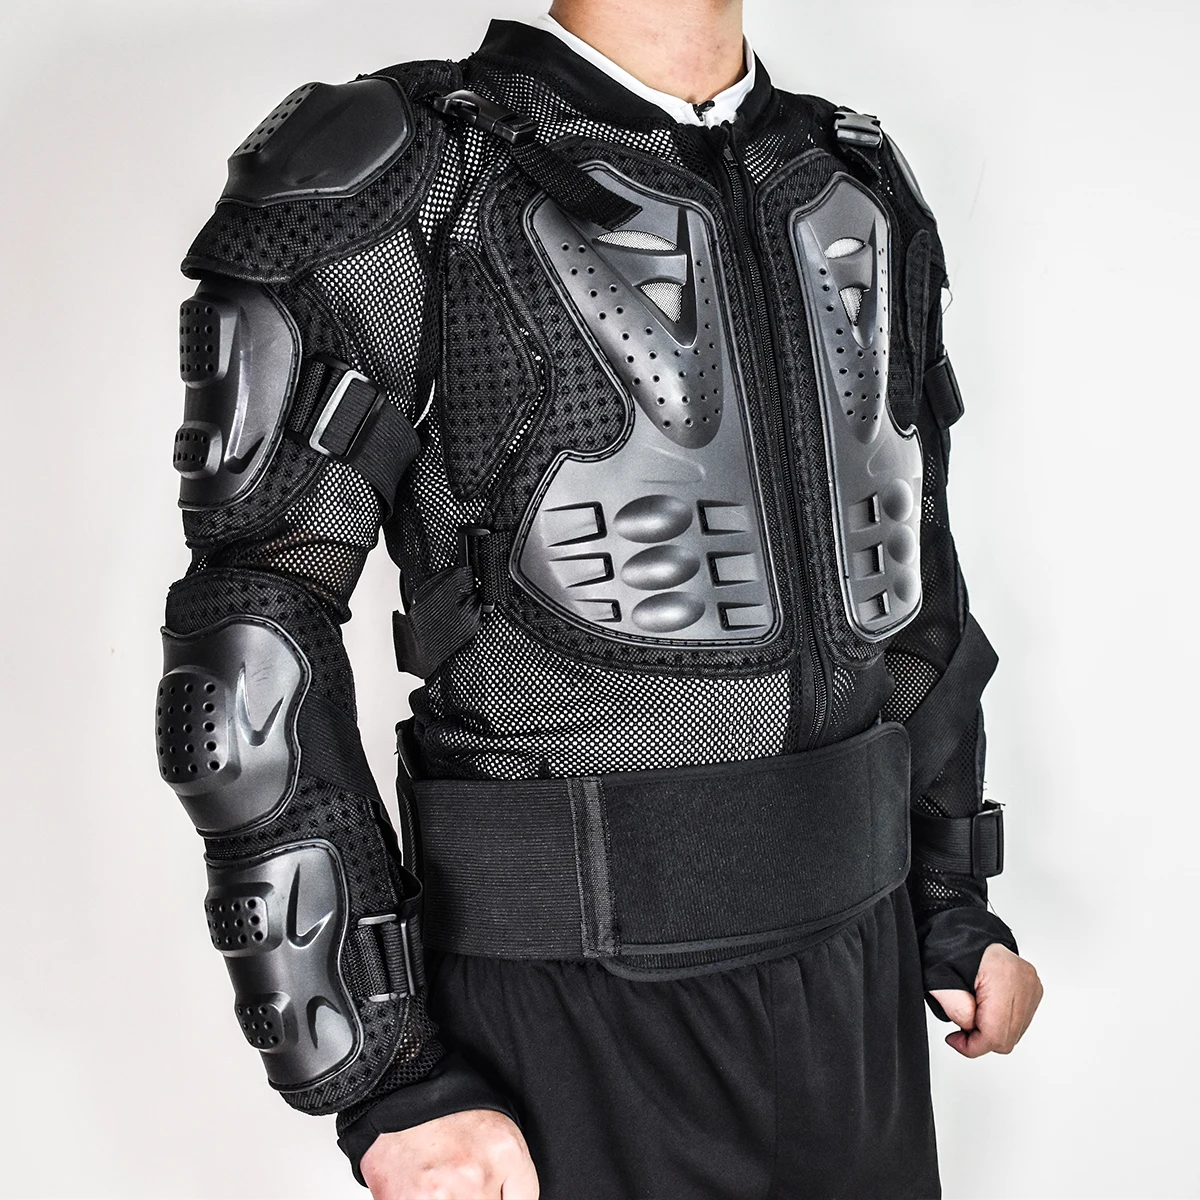 WOSAWE, спортивная куртка для защиты спины, поддержка тела, для езды на велосипеде, мотоцикле, мотокроссе, защитное снаряжение, для сноуборда, лыж, защита